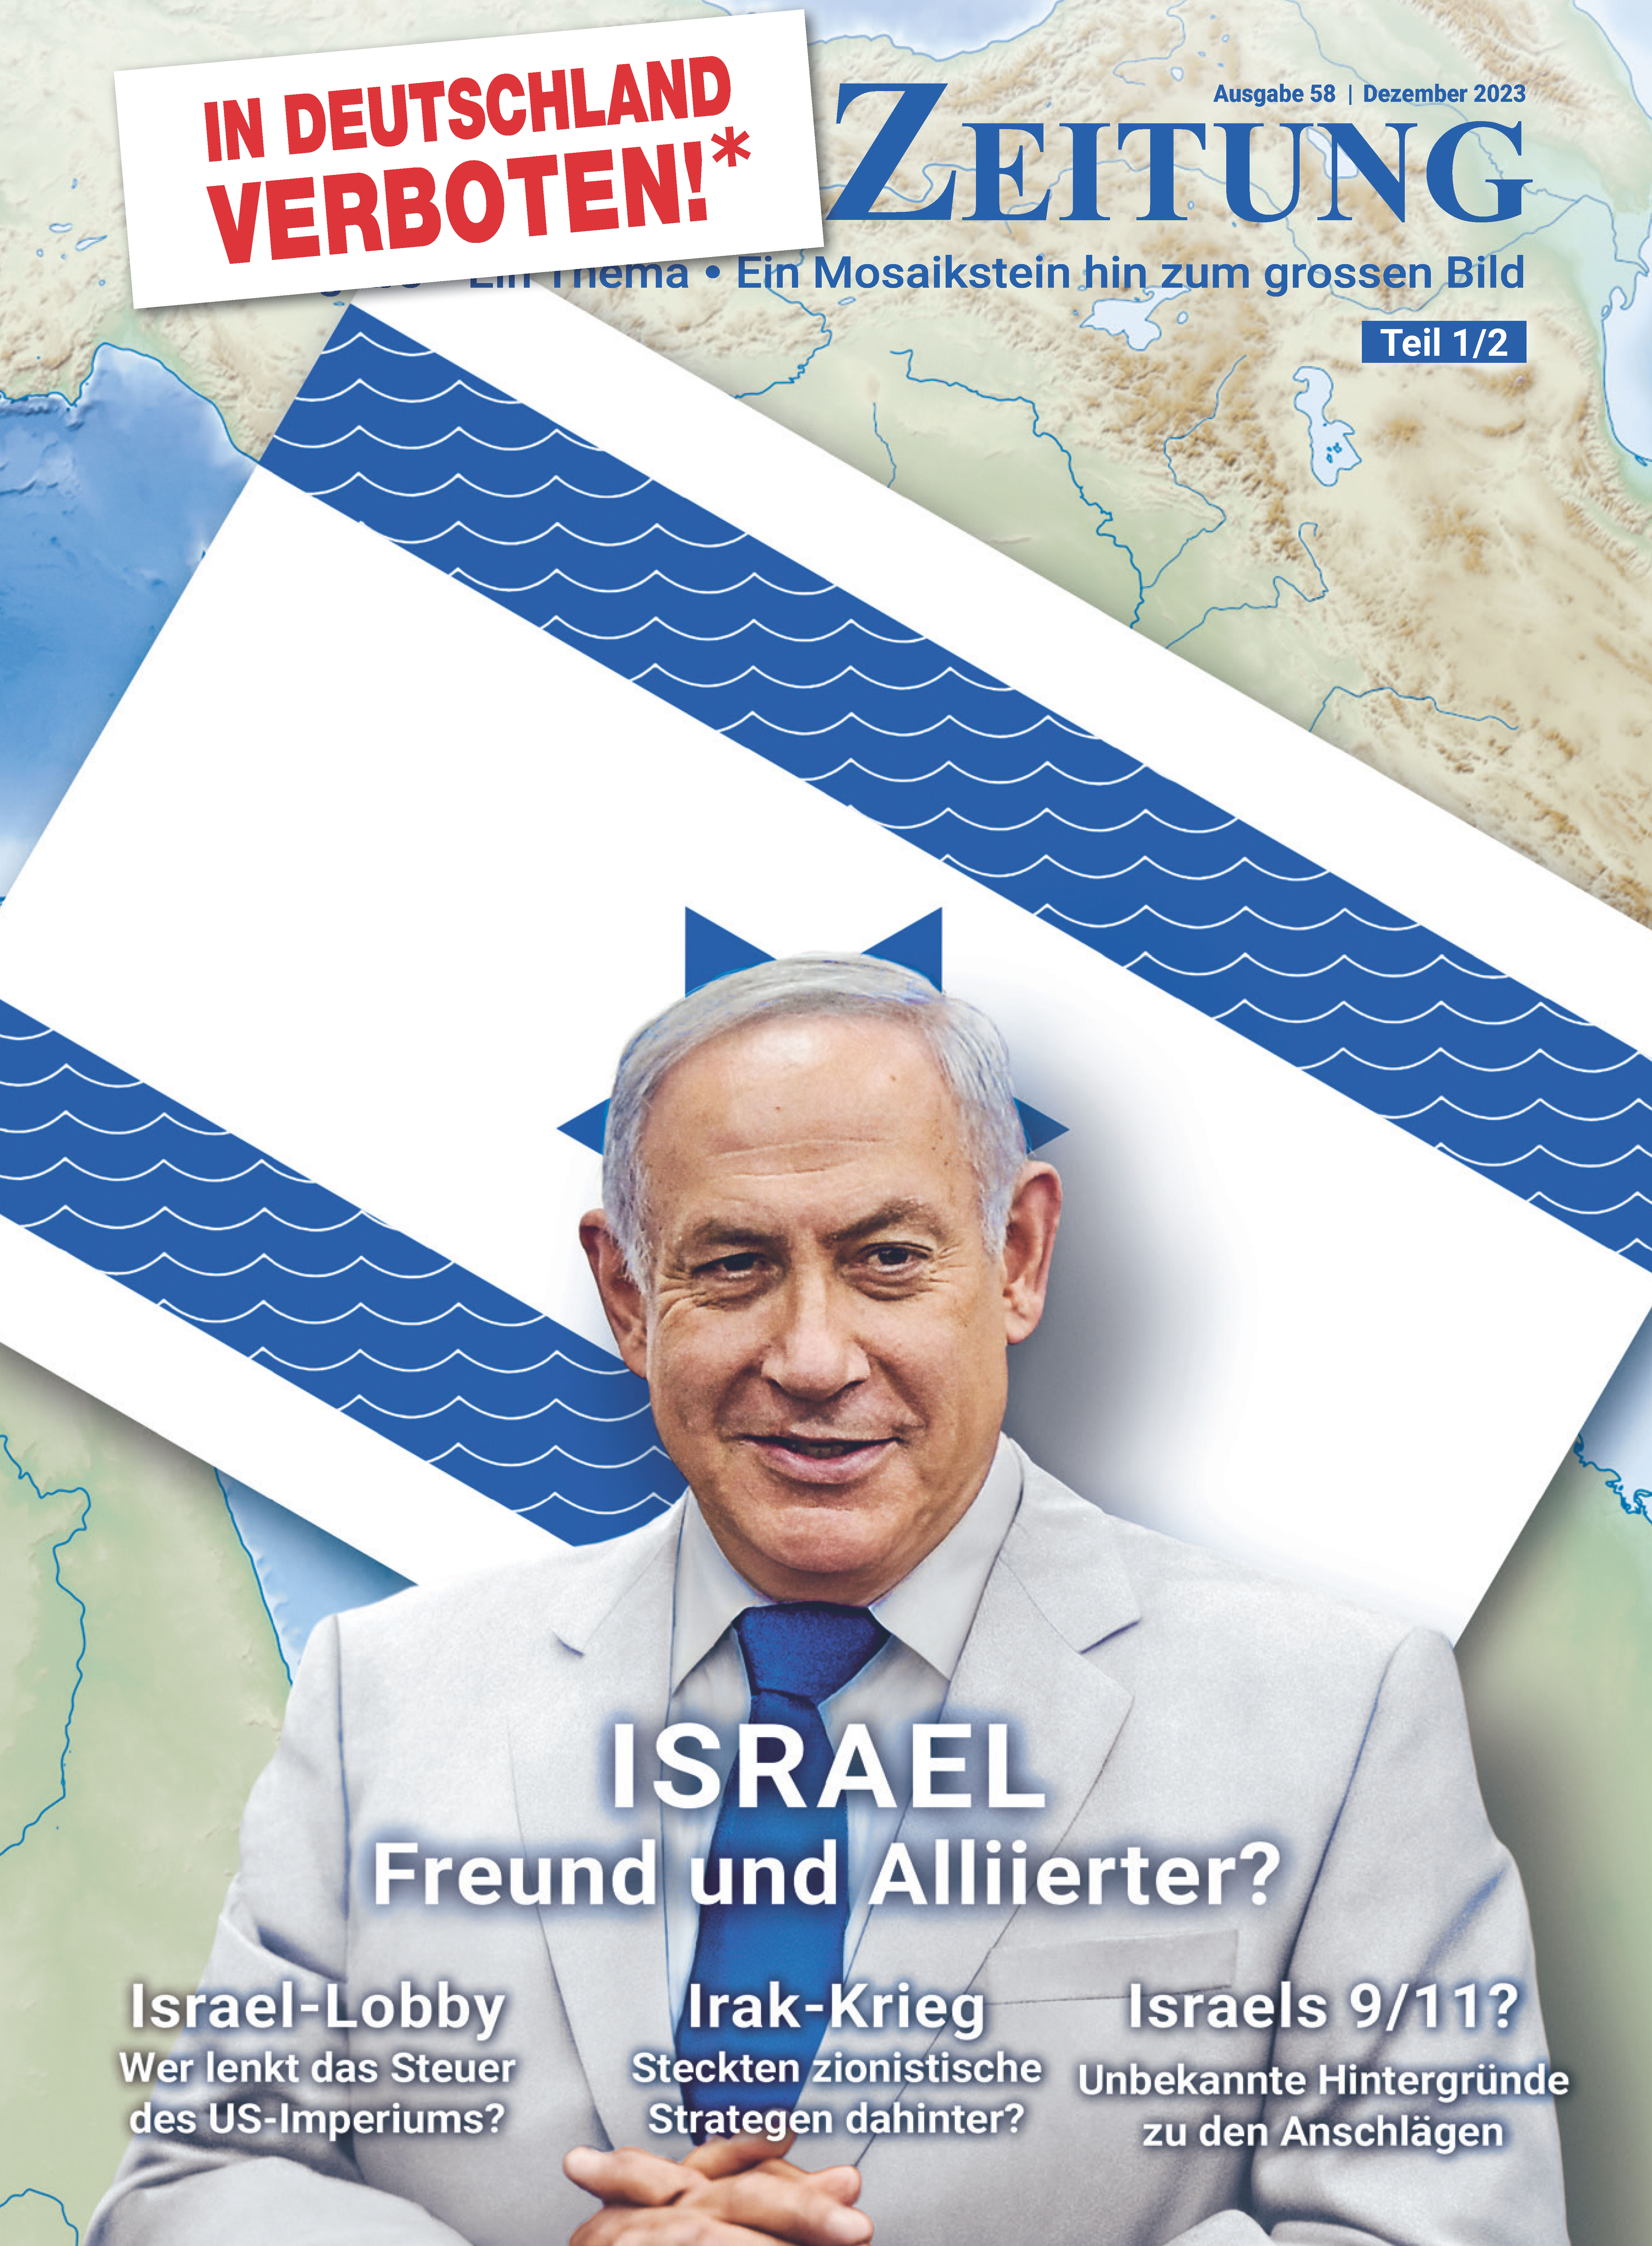 Ausgabe 58: Israel - Freund und Alliierter? (Teil 1)